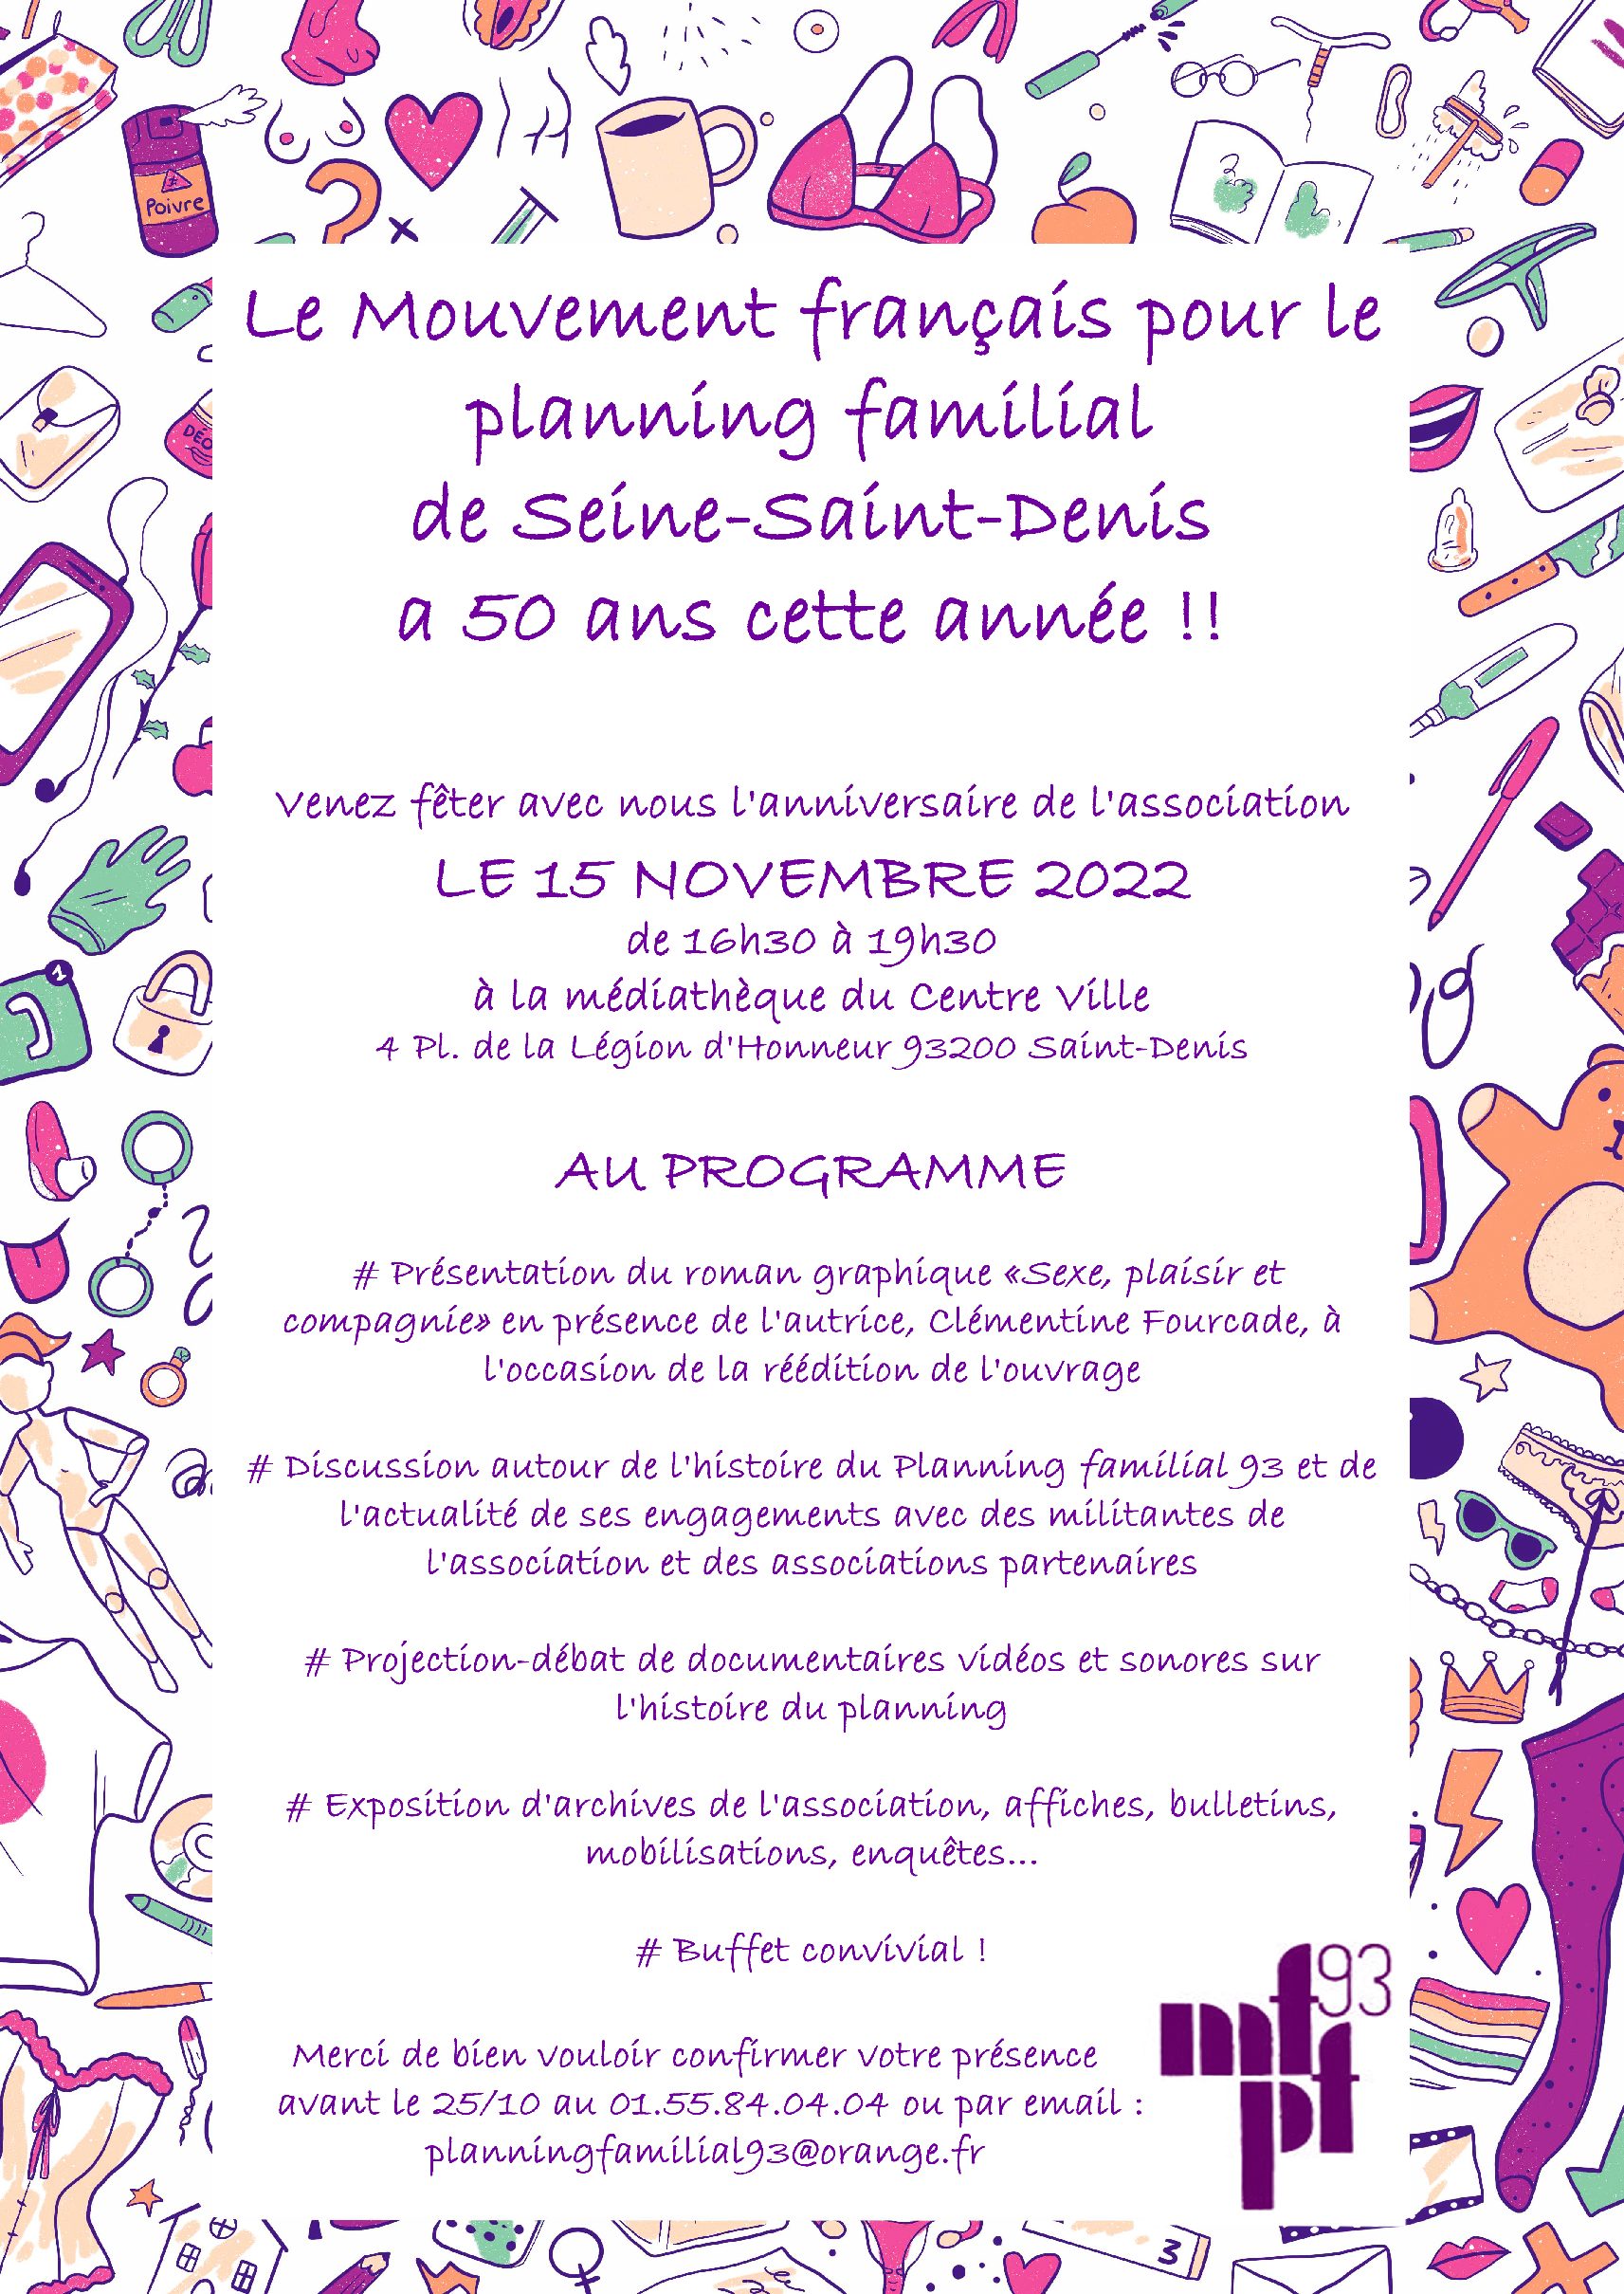 15 novembre 2022 : Le mouvement français pour le planning familial de Seine-Saint-Denis a 50 ans cette année.